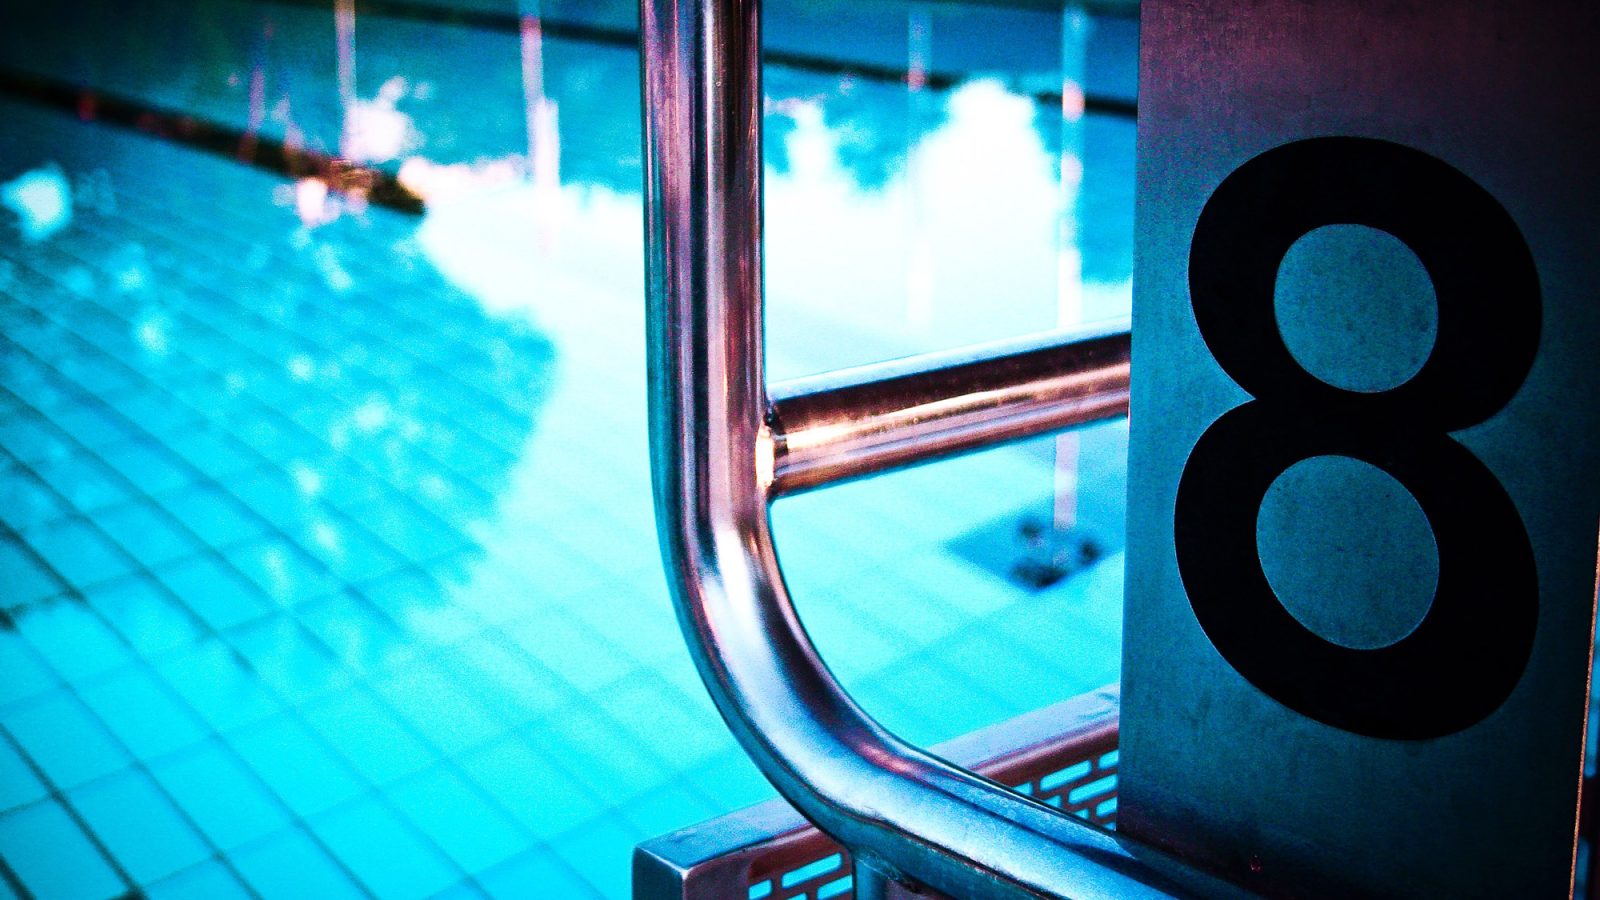 Nuoto - Gli allenamenti di resistenza aerobica